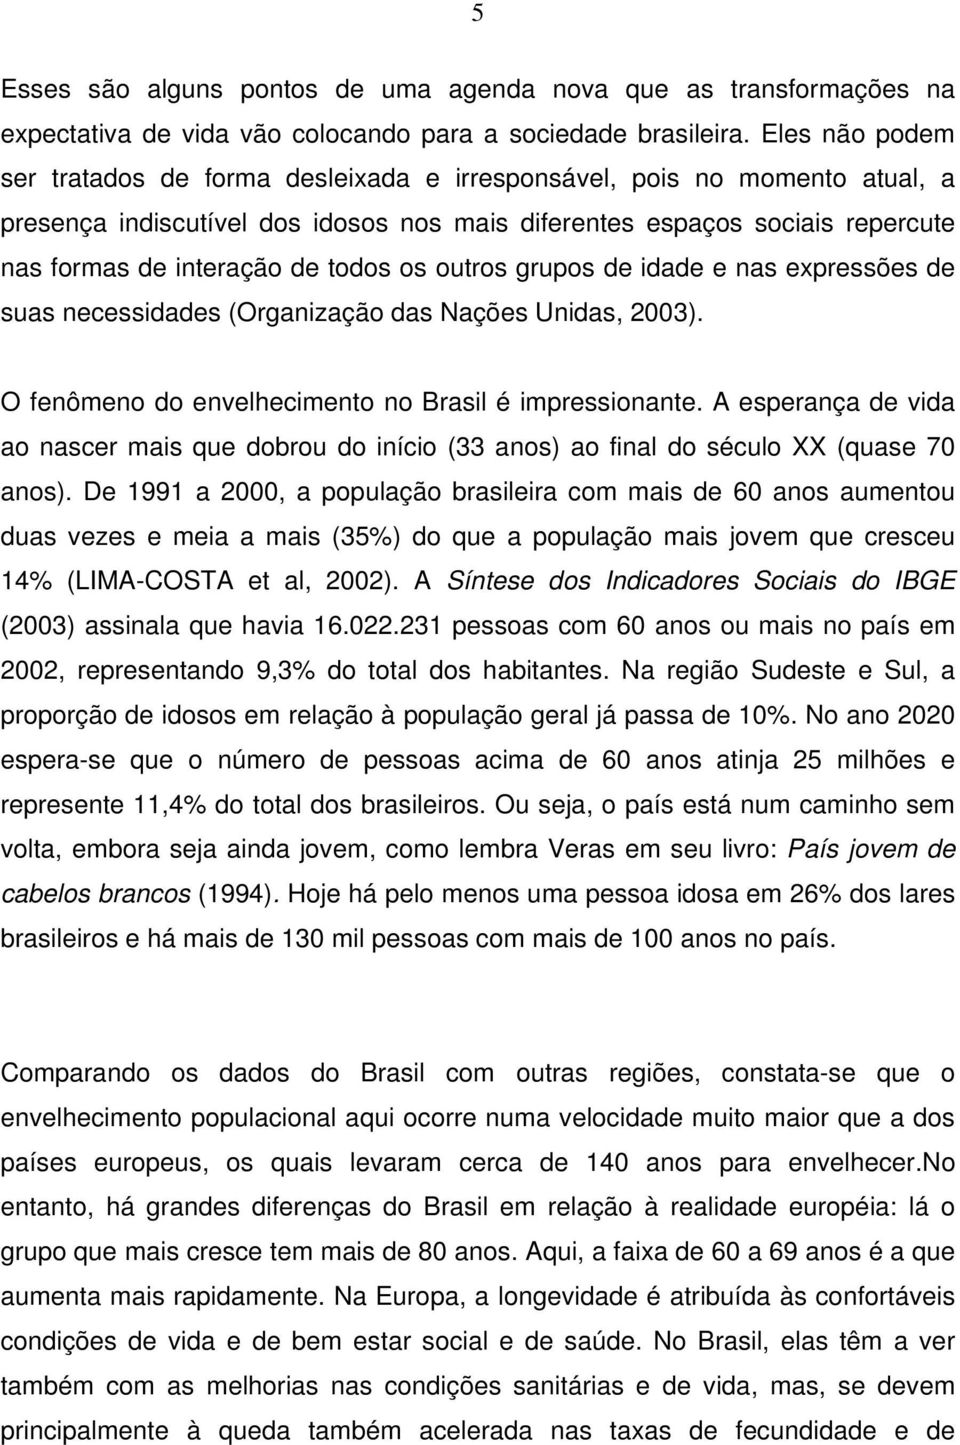 todos os outros grupos de idade e nas expressões de suas necessidades (Organização das Nações Unidas, 2003). O fenômeno do envelhecimento no Brasil é impressionante.